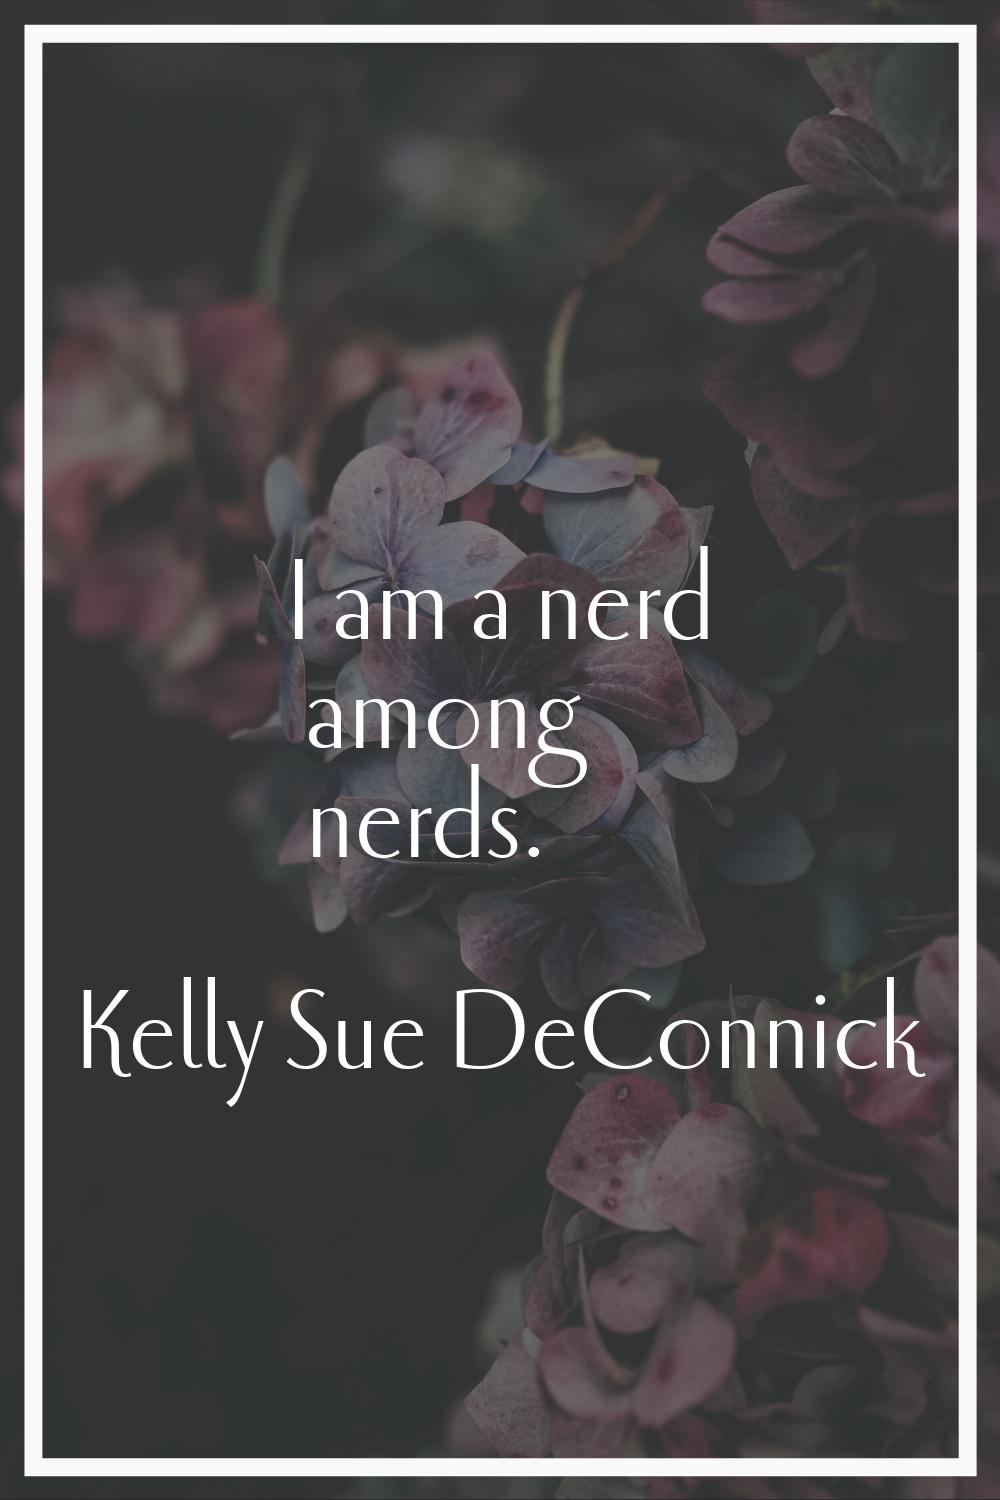 I am a nerd among nerds.